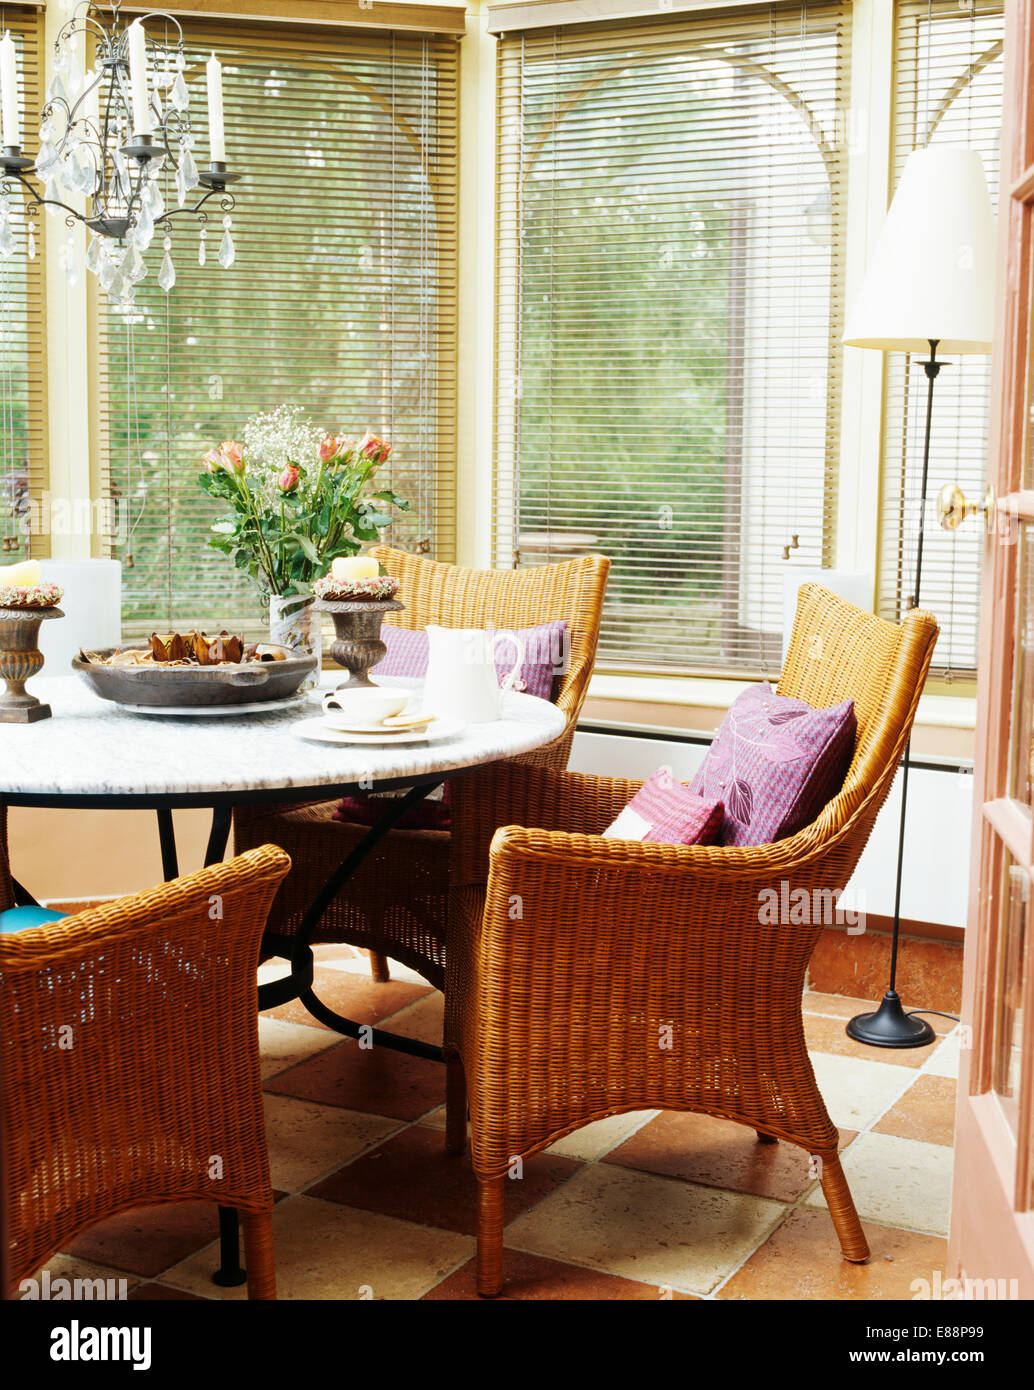 Wicker Sessel am runden Tisch im Wintergarten mit Jalousien an den Fenstern Stockfoto